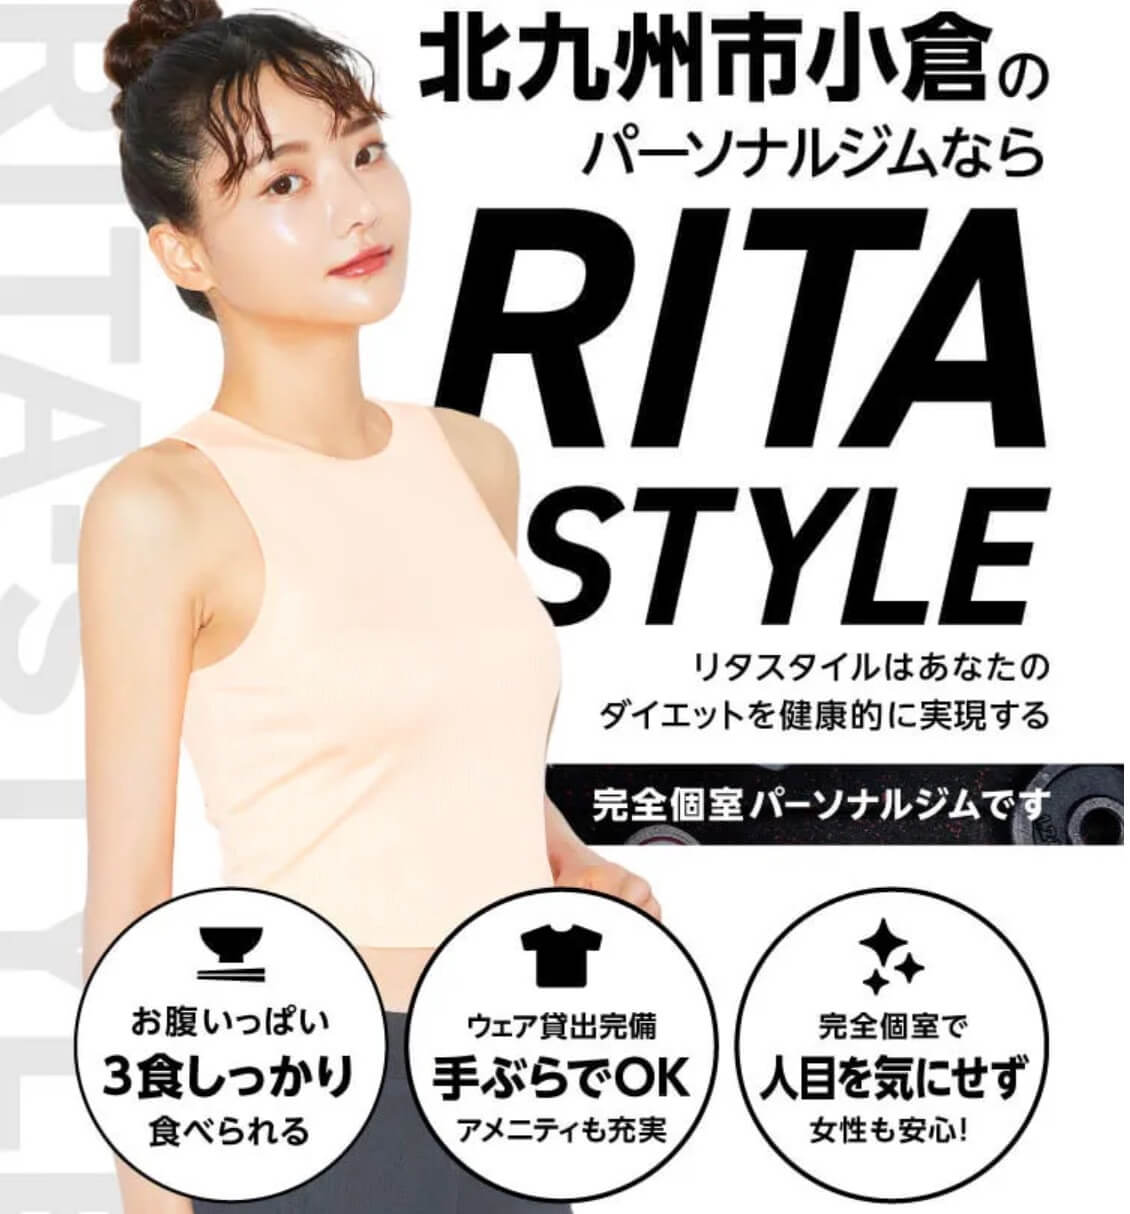 RITA-STYLE 小倉魚町店